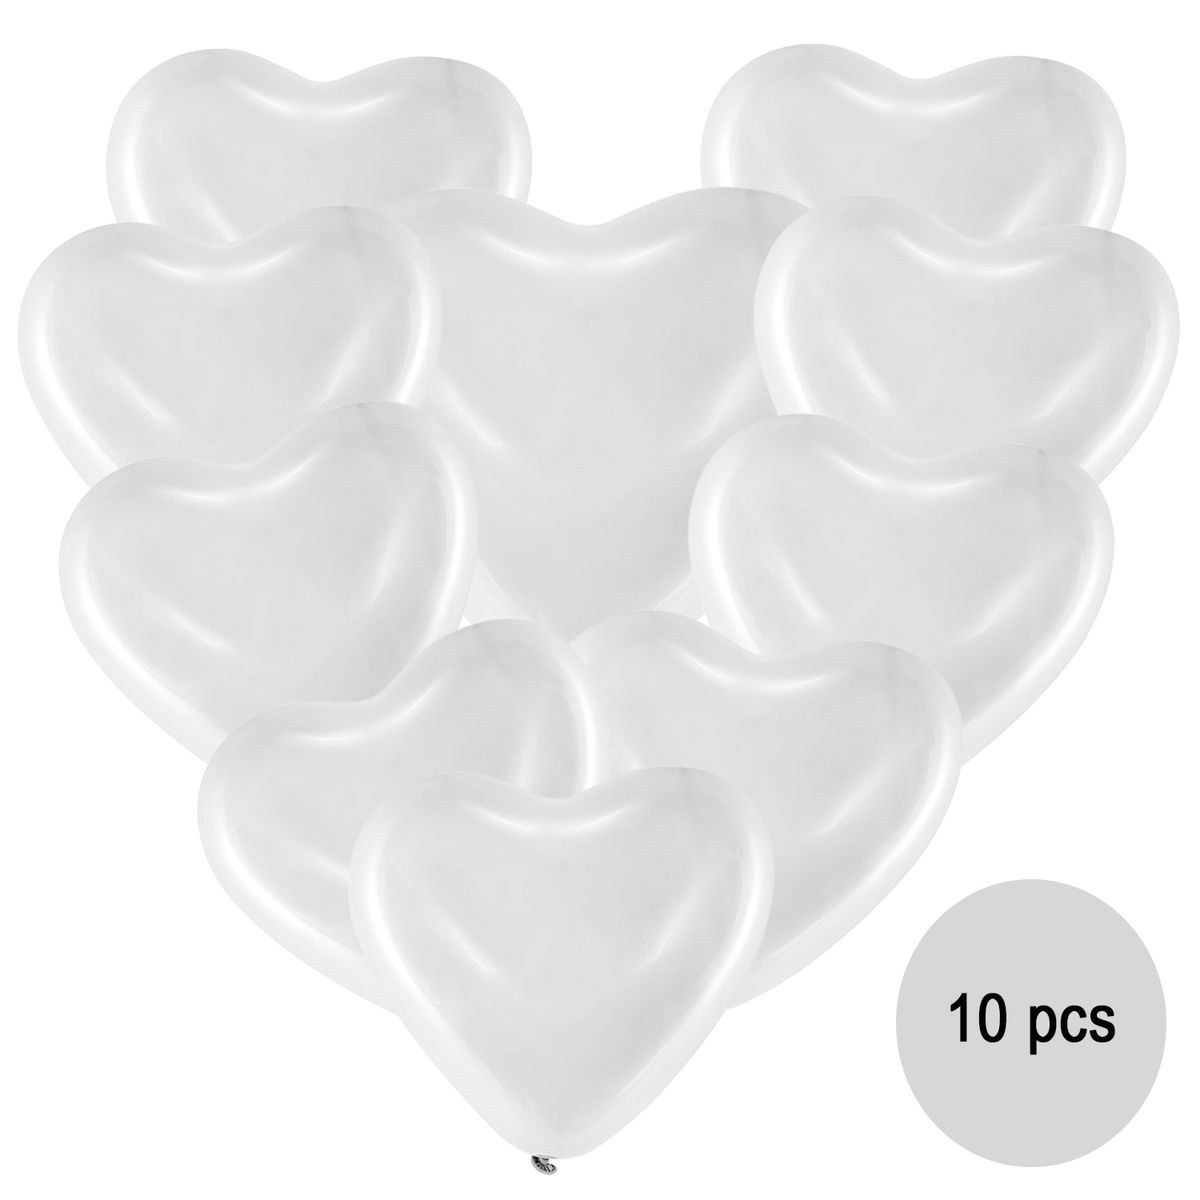 Herz Luftballons weiß Ø 40,6 cm 10 Stück Ballon Hochzeit Verlobung  Valentinstag